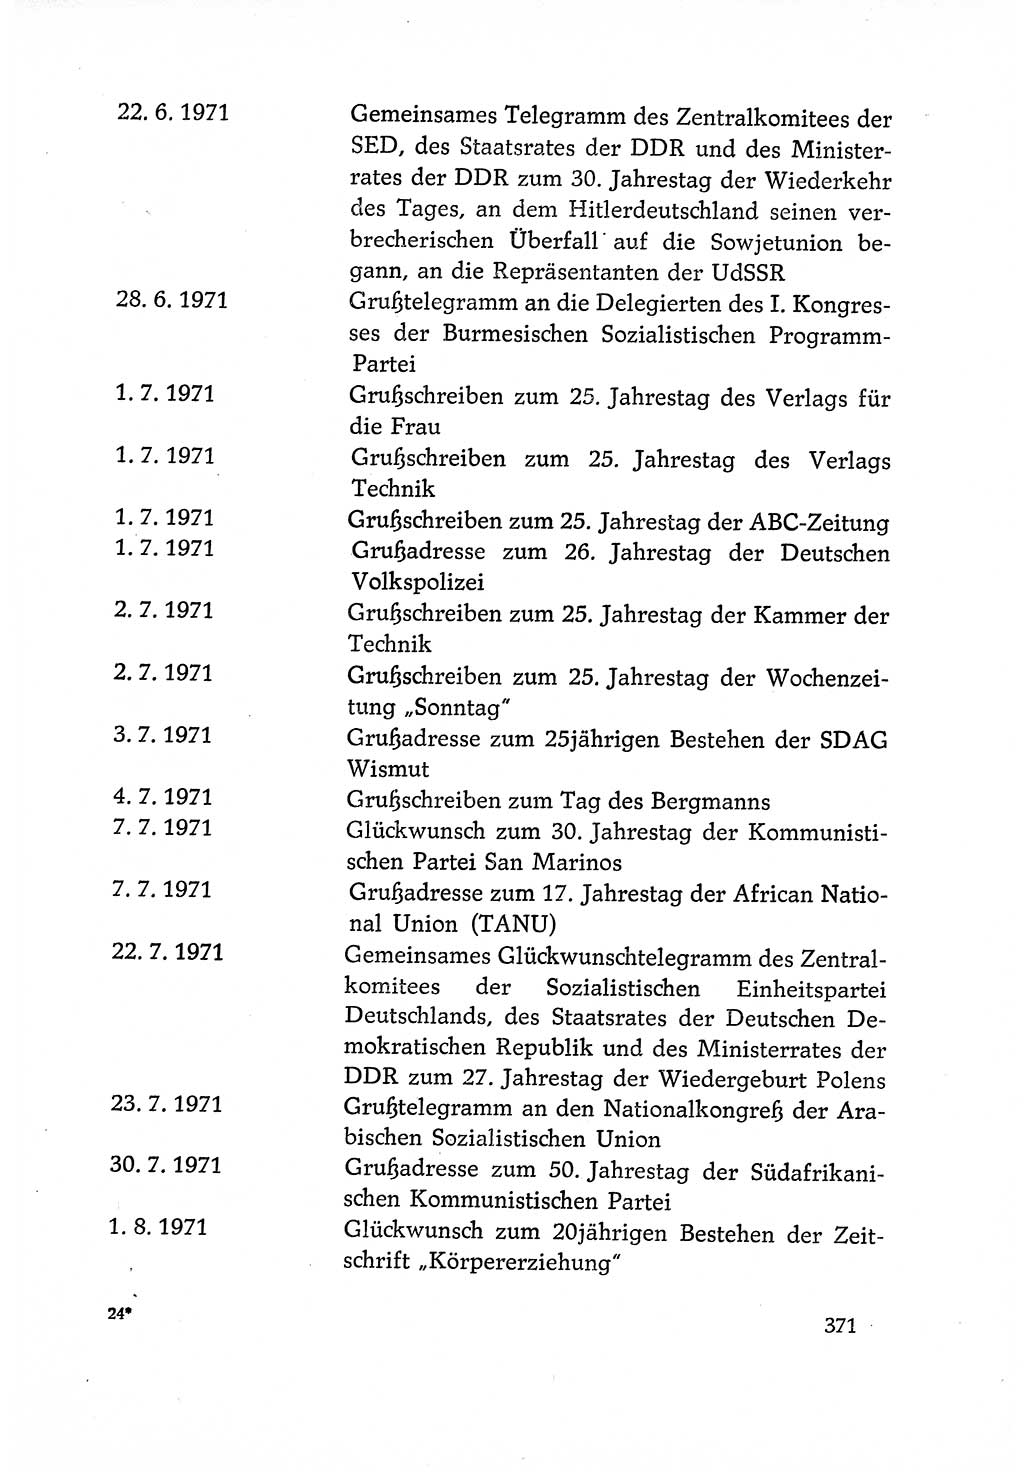 Dokumente der Sozialistischen Einheitspartei Deutschlands (SED) [Deutsche Demokratische Republik (DDR)] 1970-1971, Seite 371 (Dok. SED DDR 1970-1971, S. 371)